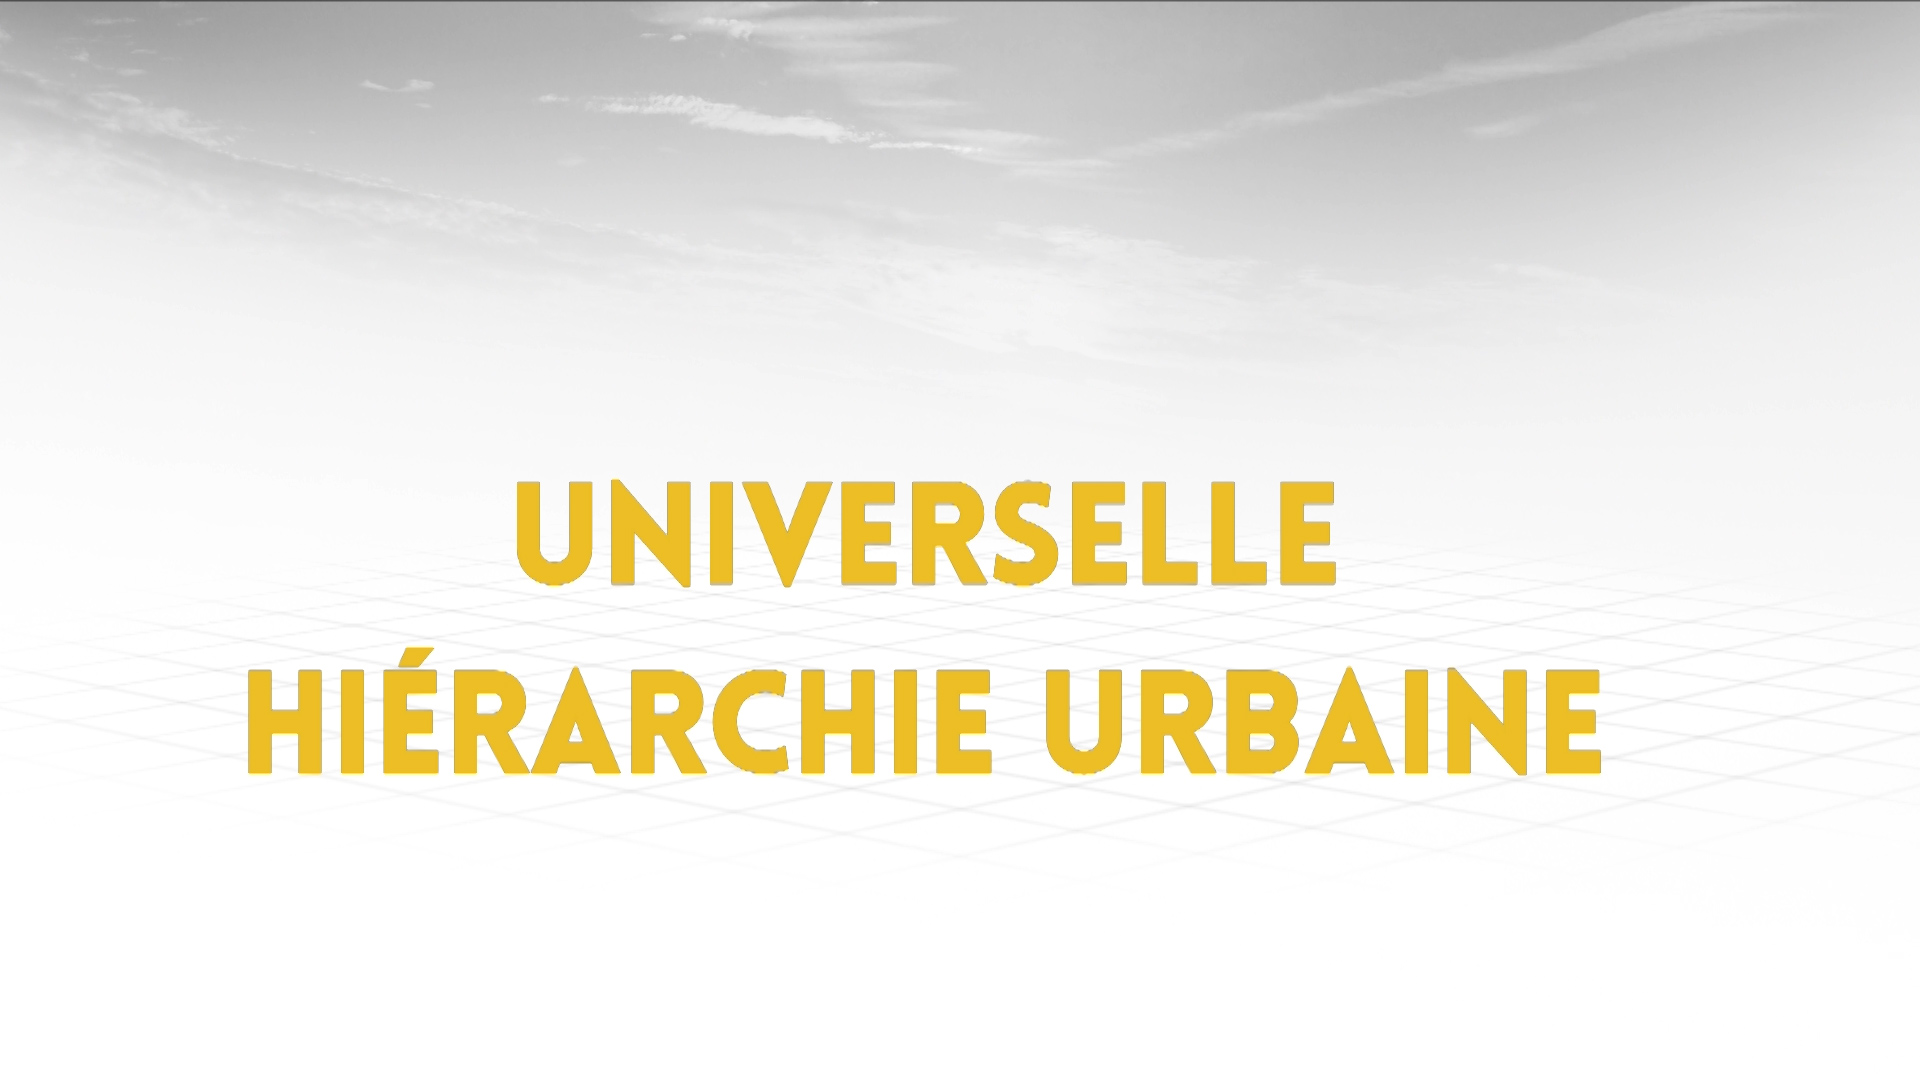 2.2 - Universelle hiérarchie urbaine